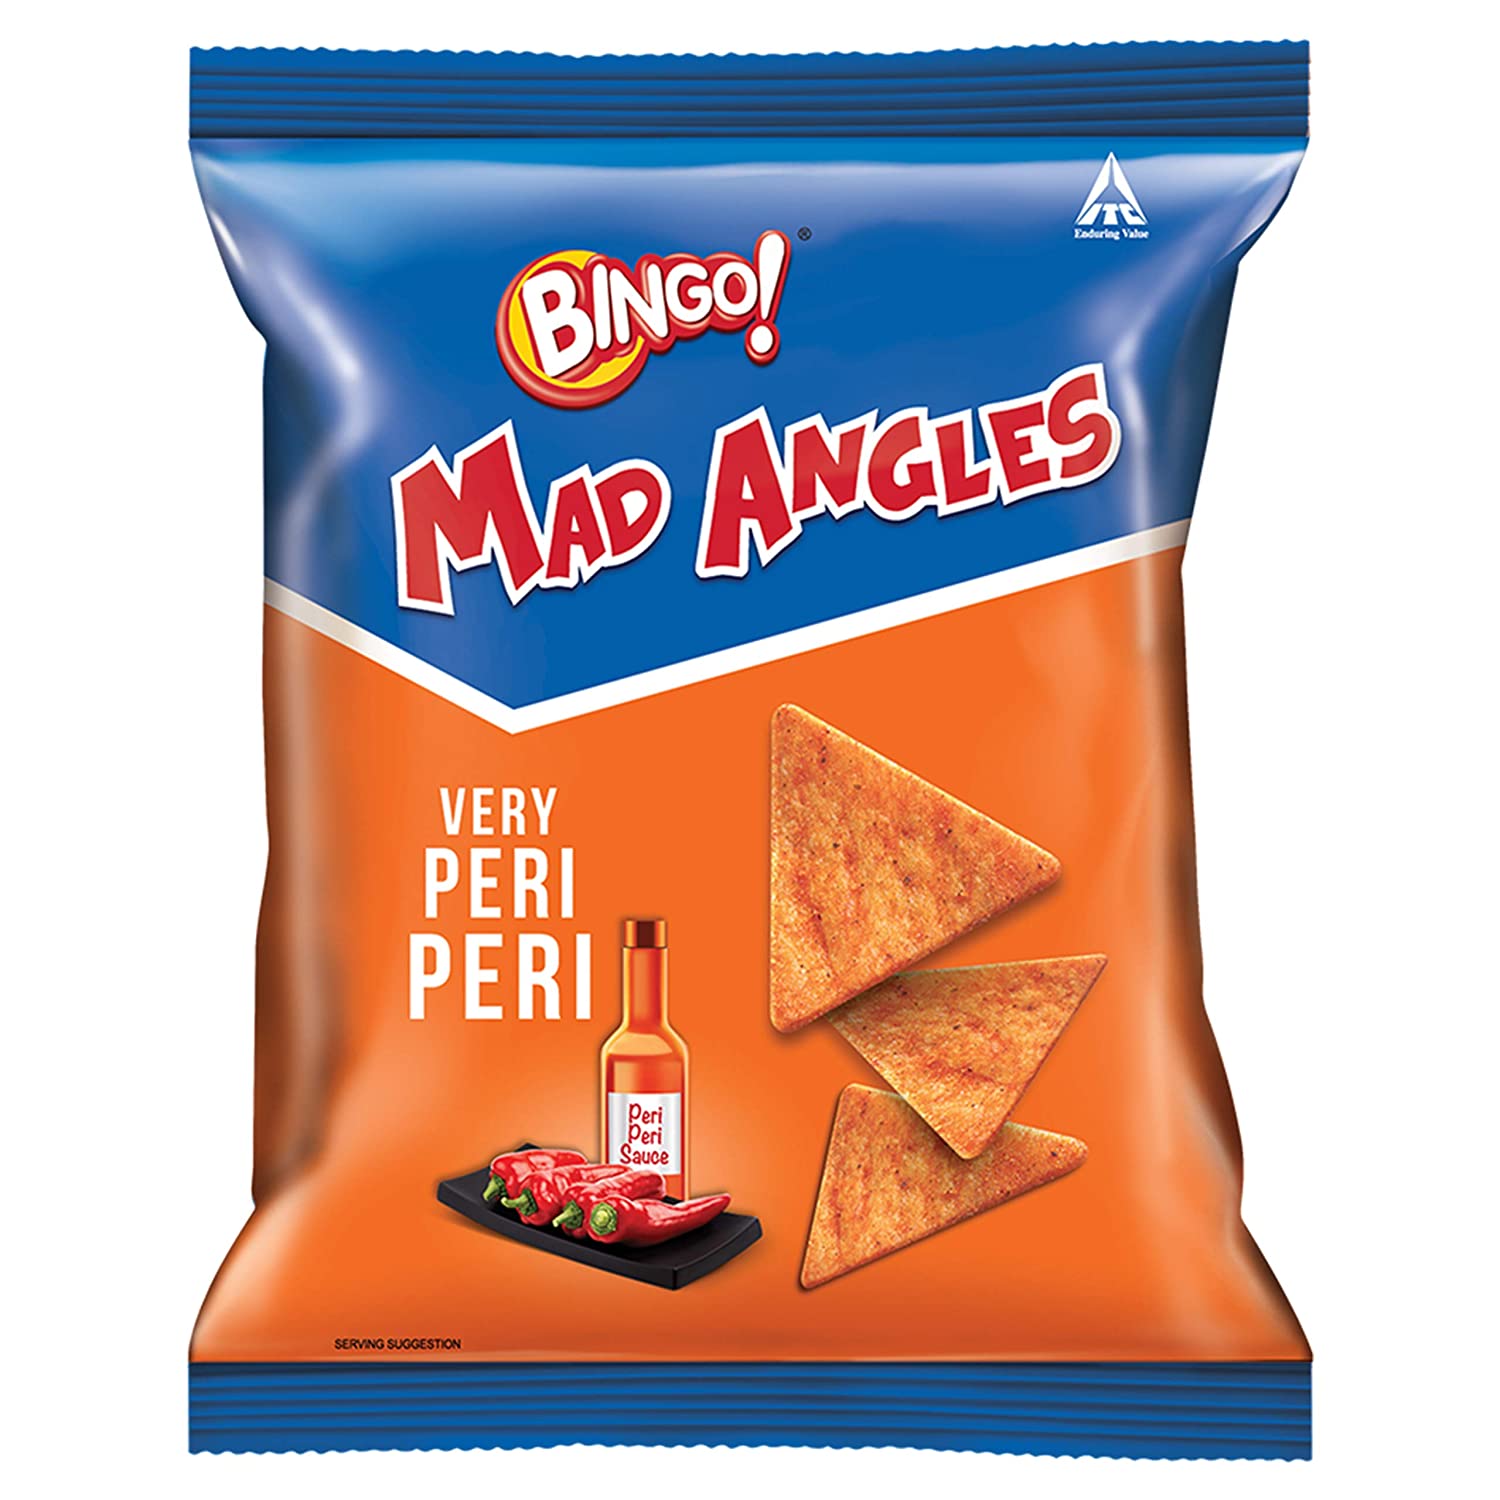 Bingo Mad Angles, Very Peri Peri, 36.5g